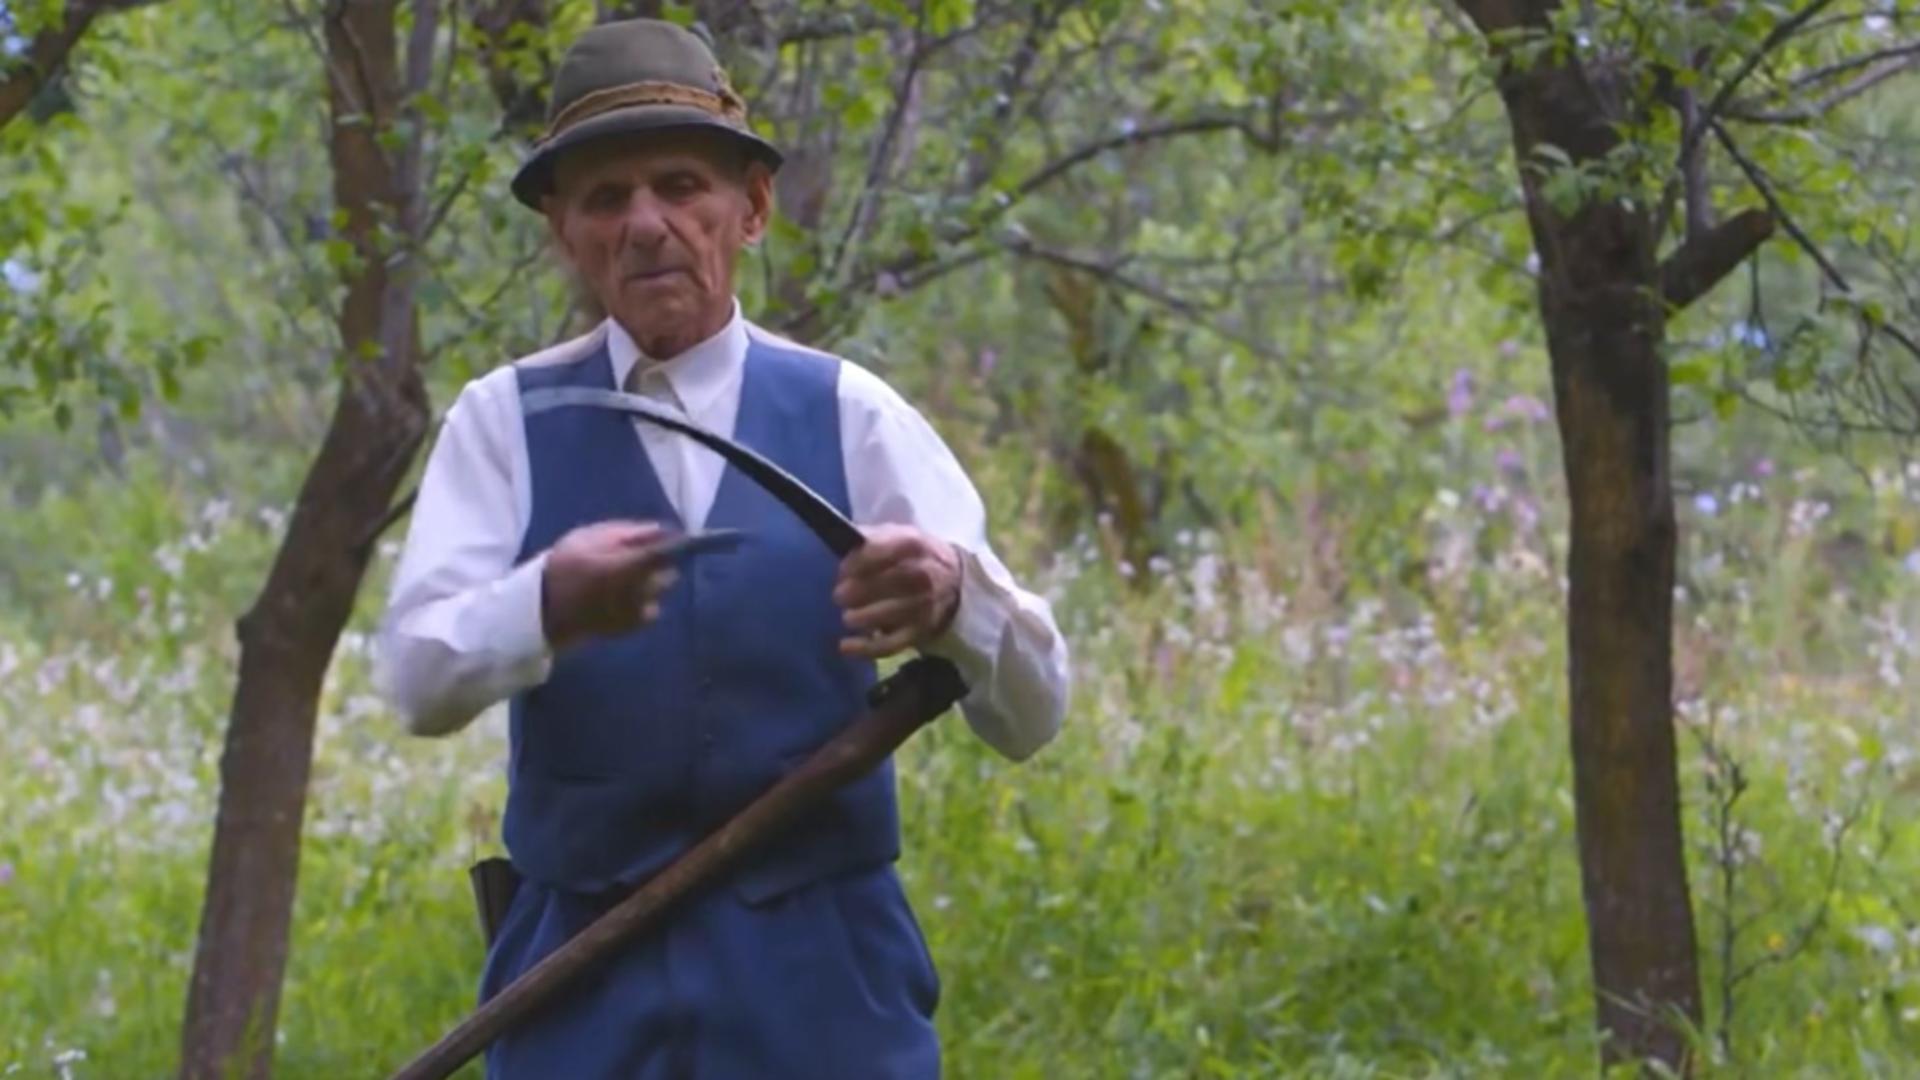 Imagini INEDITE: Veteranul de război, care la 102 ani cosește iarba VIDEO